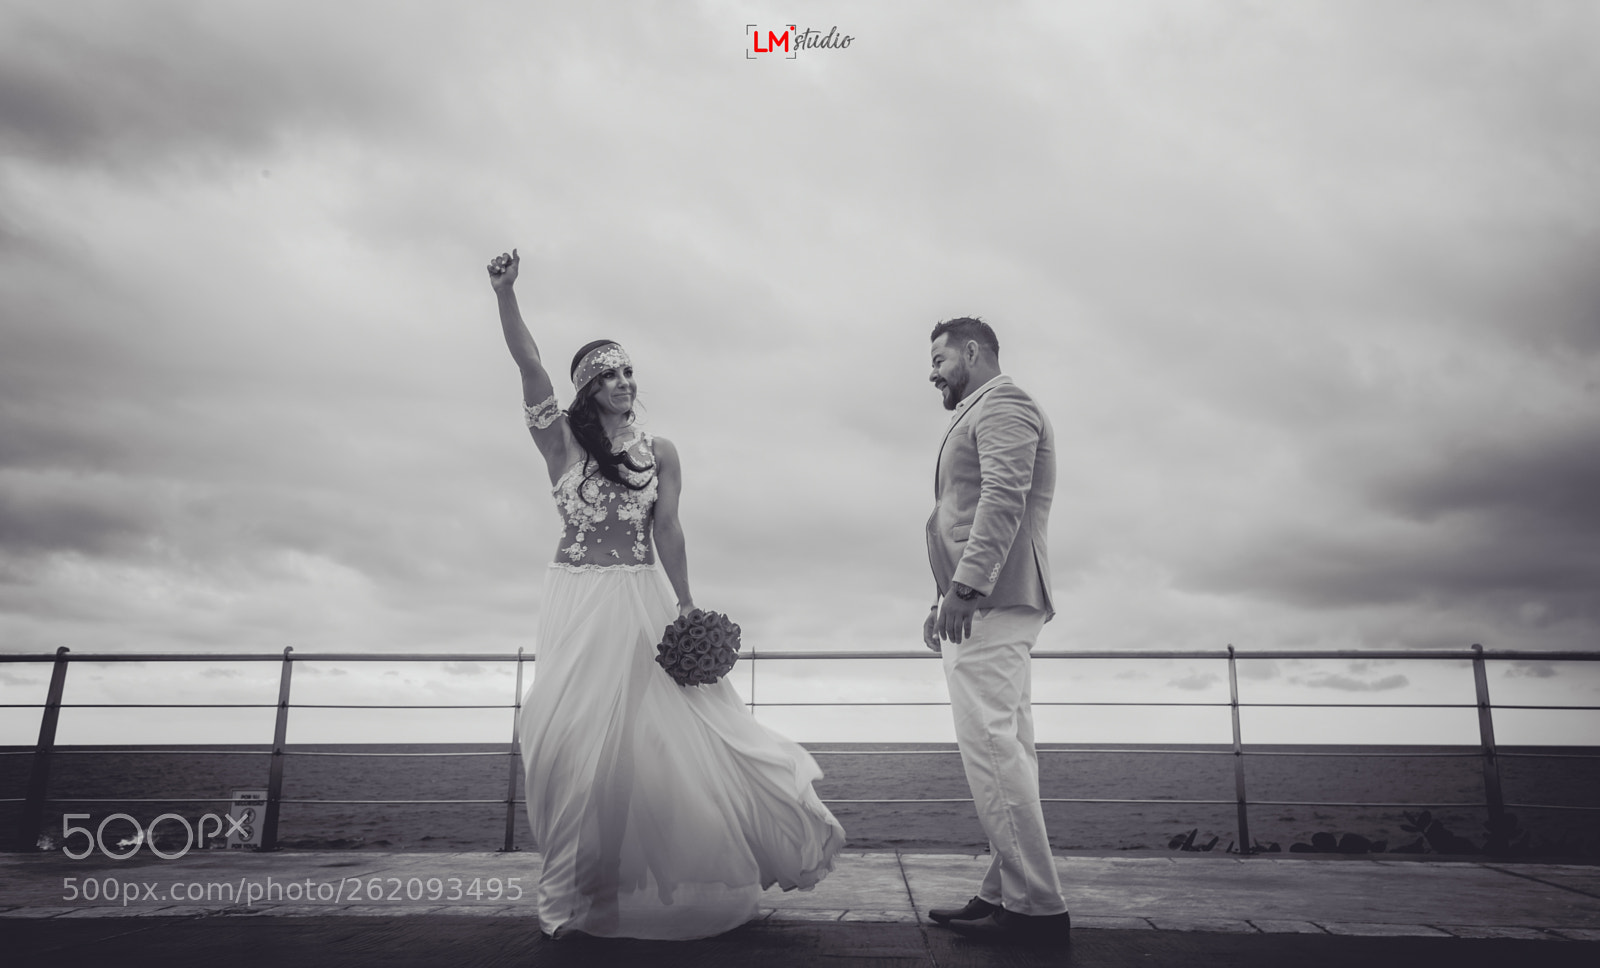 Canon EOS 6D sample photo. Wedding life photography